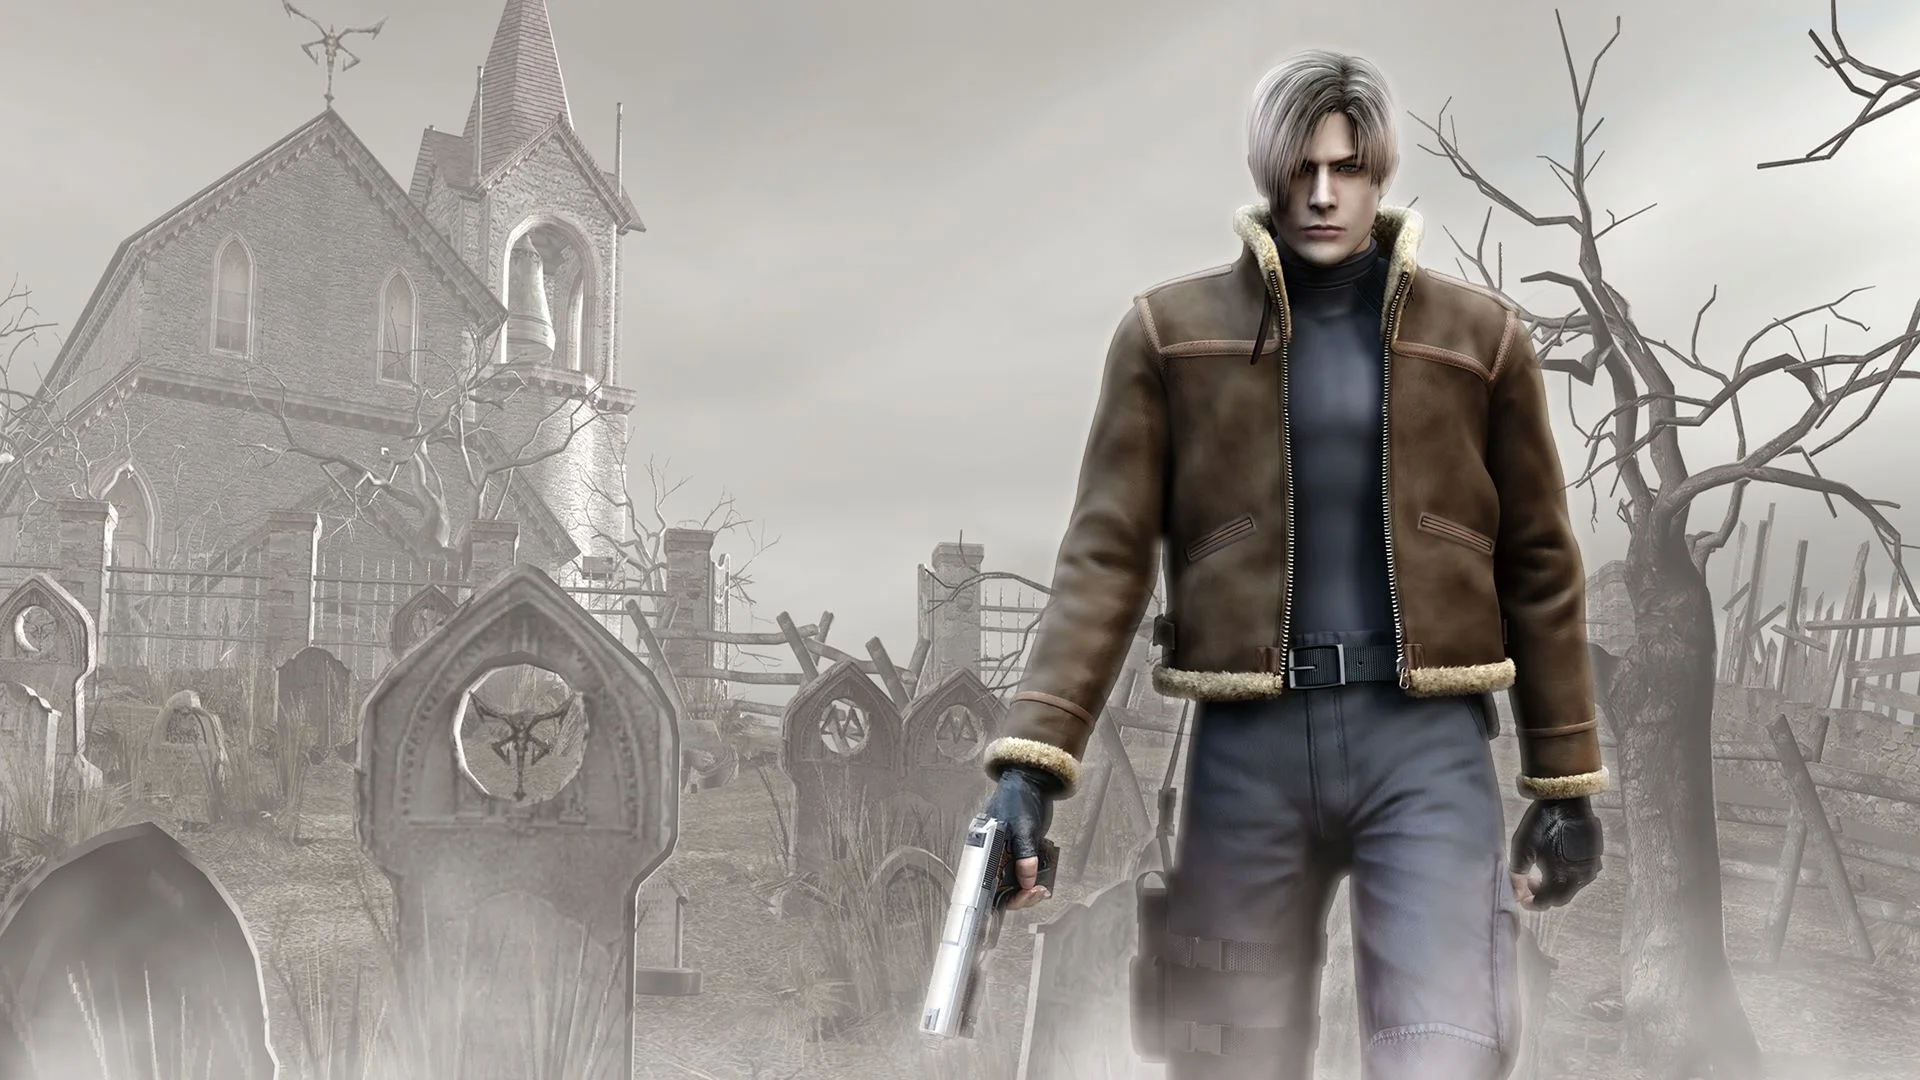 21 мая Resident Evil 4 вышла на Switch. Удивительно, конечно, насколько живучей оказалась игра, которая впервые появилась как раз на консоли Nintendo — на GameCube. И если бы не версия для Wii в 2007 году, могло бы получиться очень красивое возвращение — после стольких лет, за которые RE 4 побывала, кажется, на каждой популярной игровой платформе. Так, впрочем, тоже нормально — чем больше переизданий четверки, тем лучше.